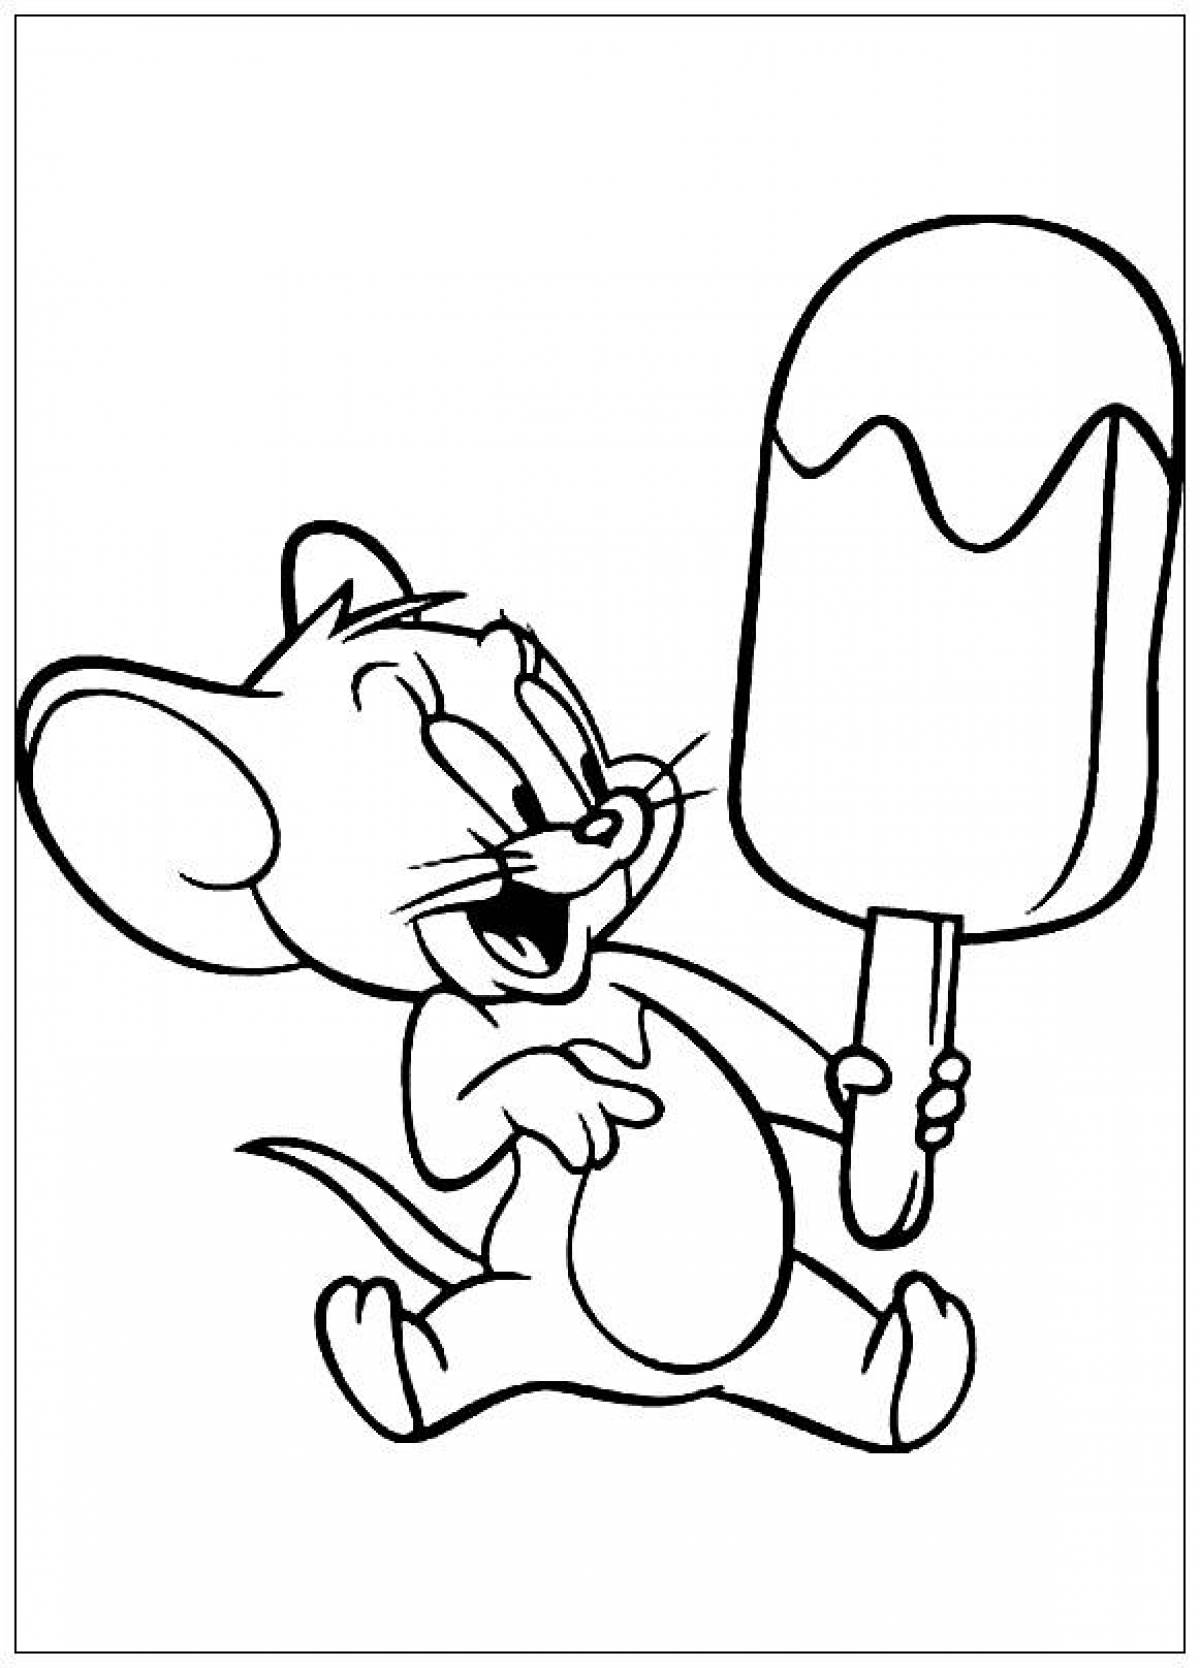 Jerry with ice cream